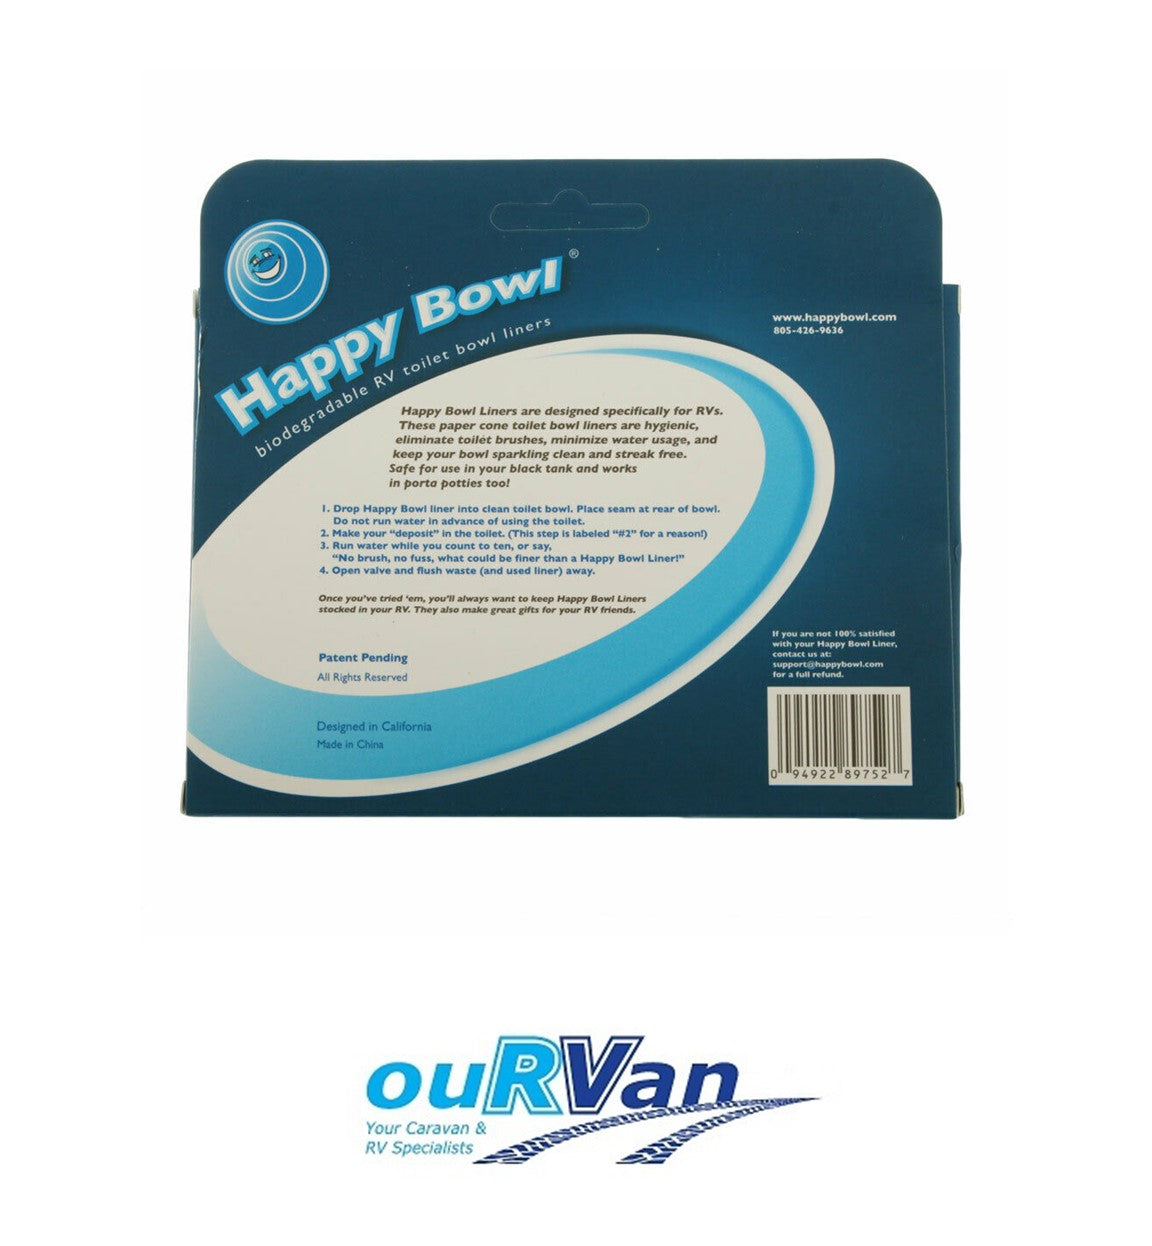 Happy Bowl Toilet Liners - 50 Pack Caravan RV